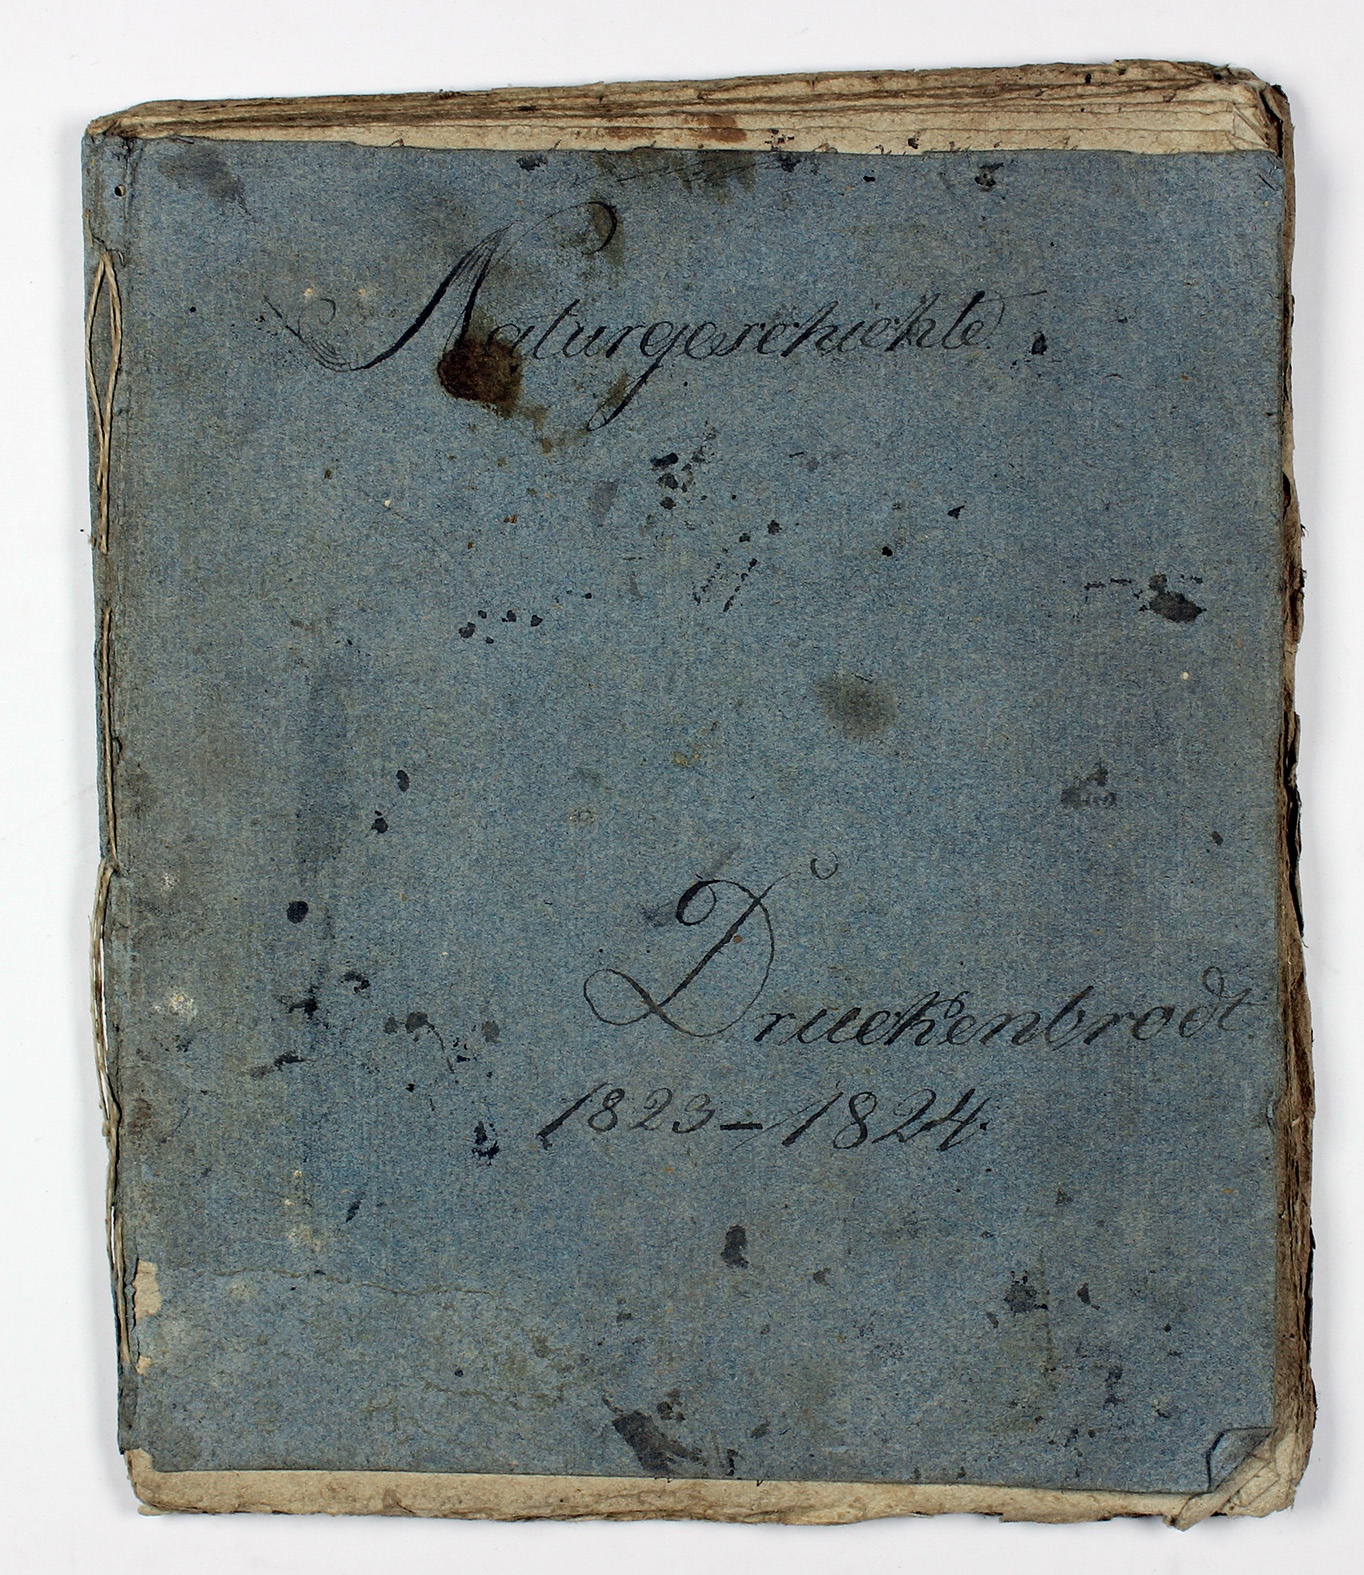 Schulheft von Druckenbrodt für das Fach Naturgeschichte, 1823-1824 (Museum Wolmirstedt RR-F)